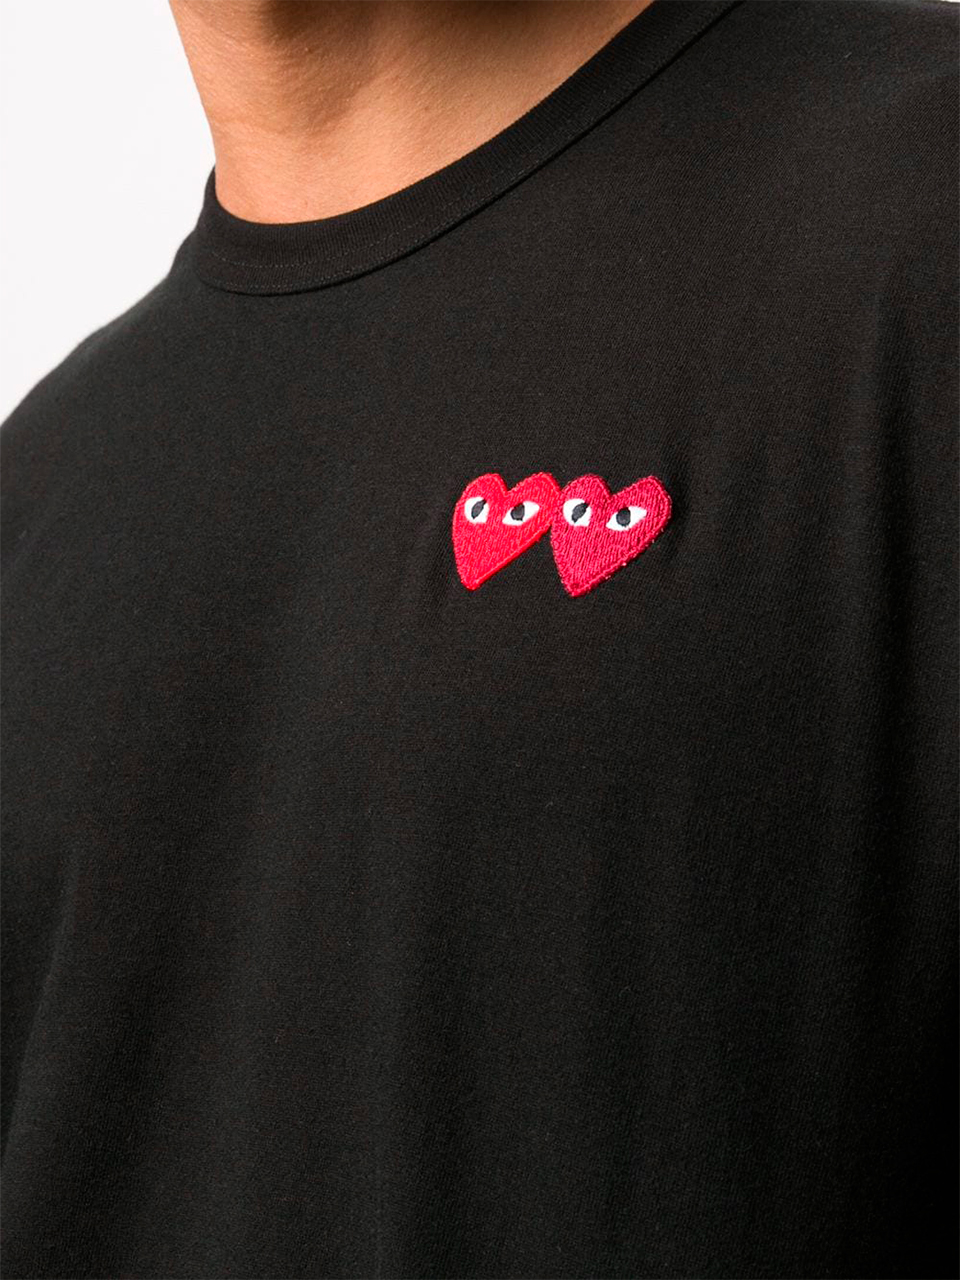 Imagem de: Camiseta Comme Des Garçons Preta com Logo Duplo